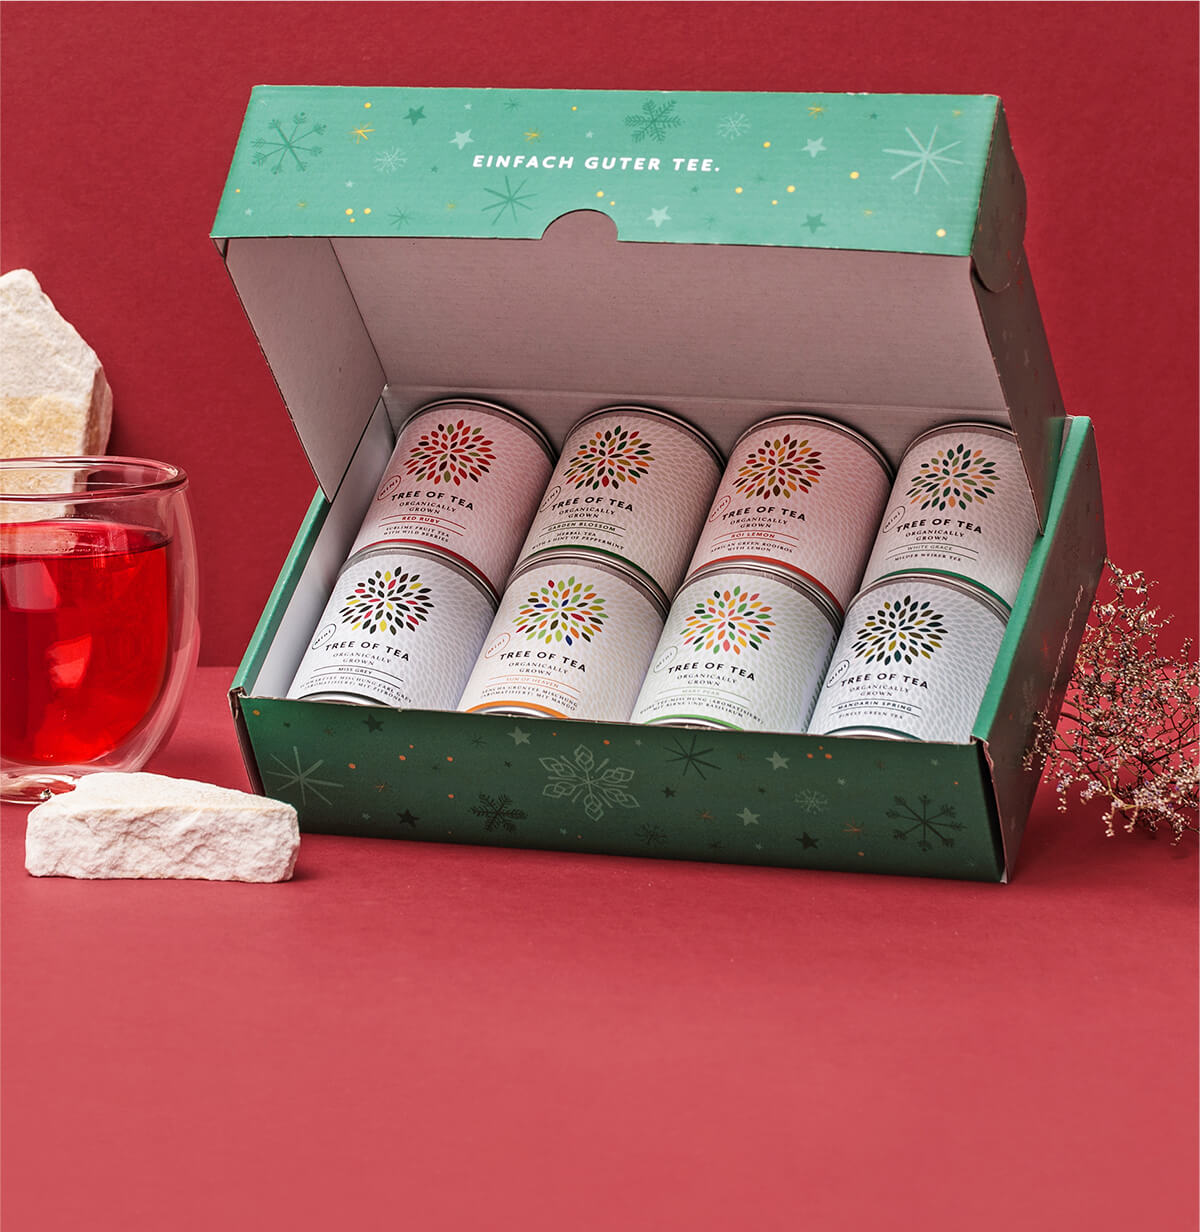 8 leckere Tee-Minis vereint im 8er Probierpaket in der weihnachtlichen Geschenkbox.